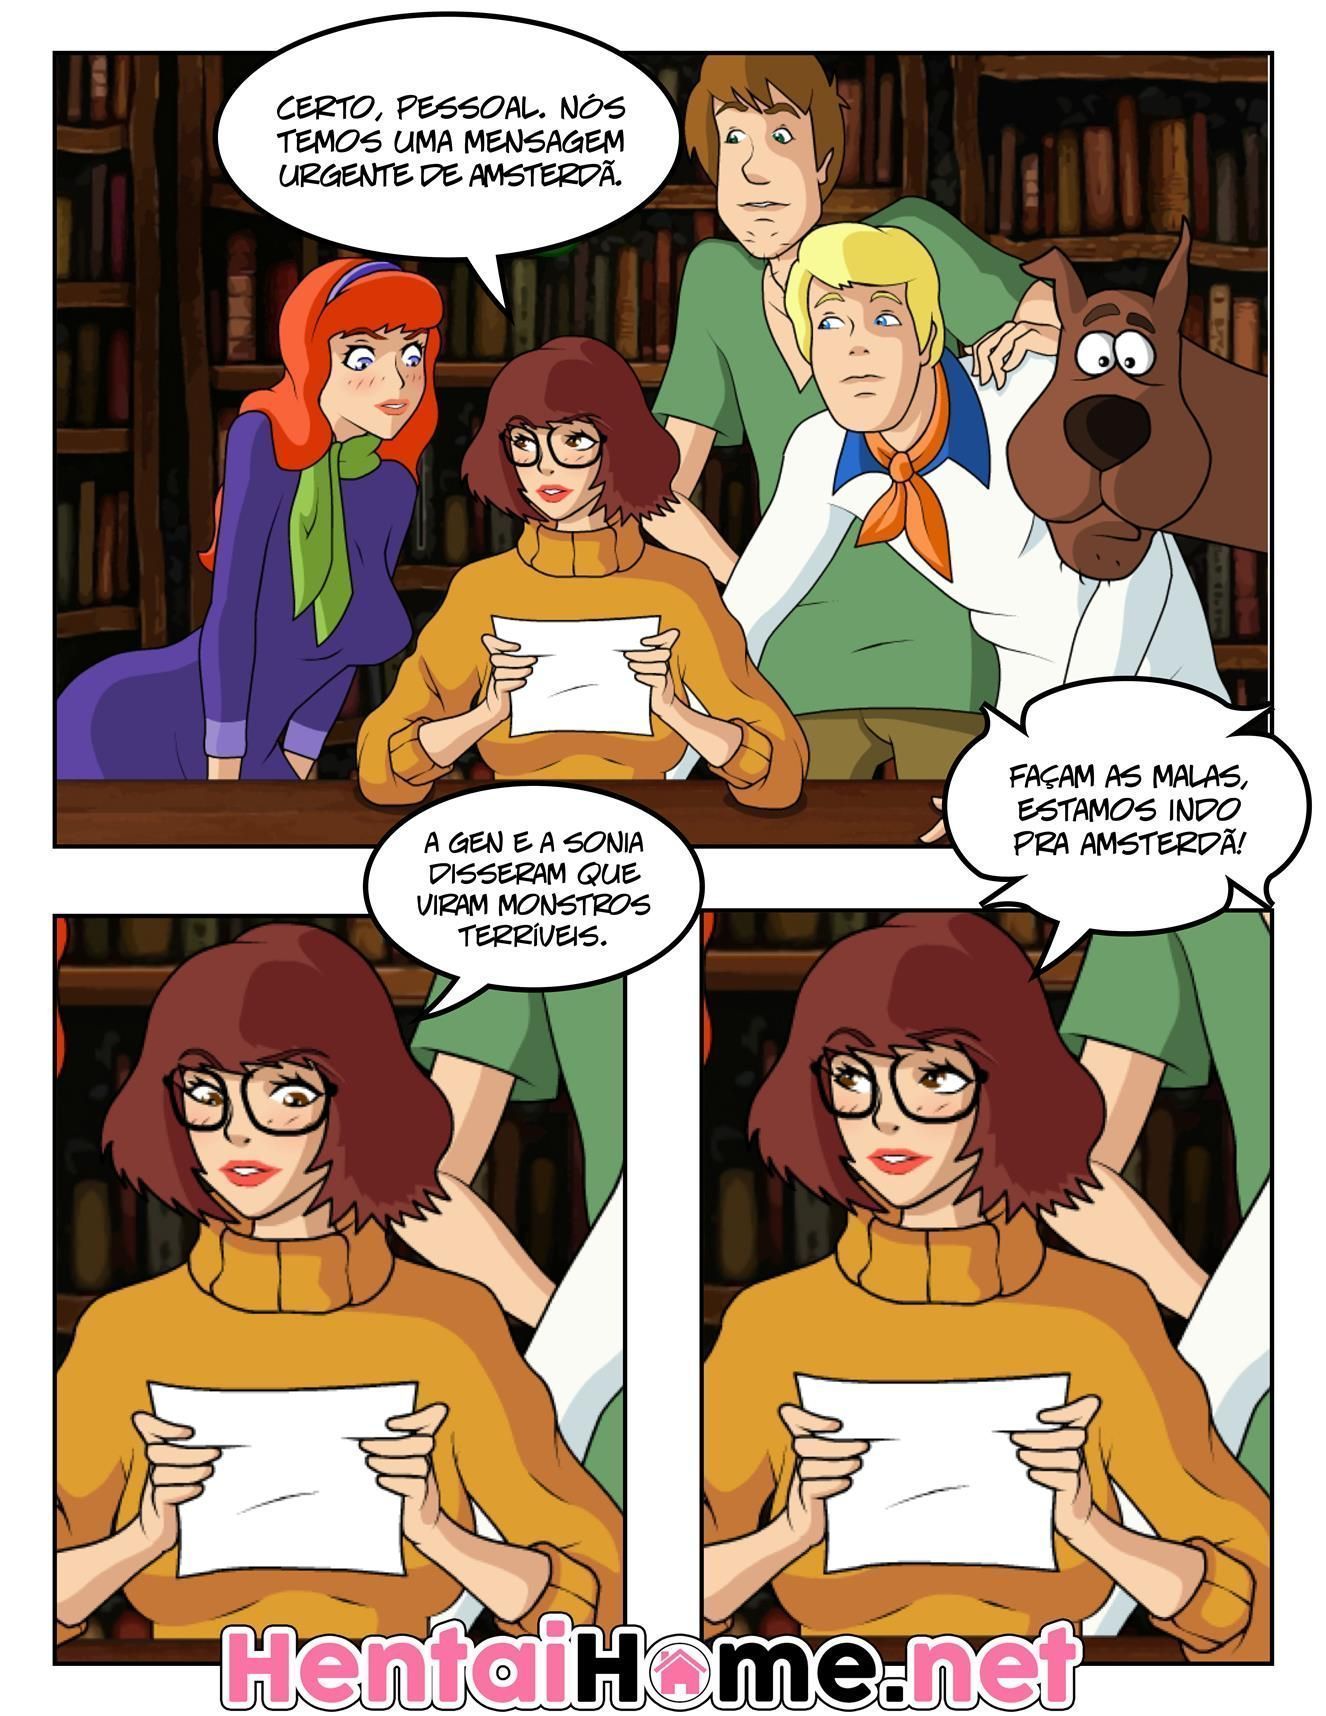 Scooby Doo: Velma precisa de leitinho